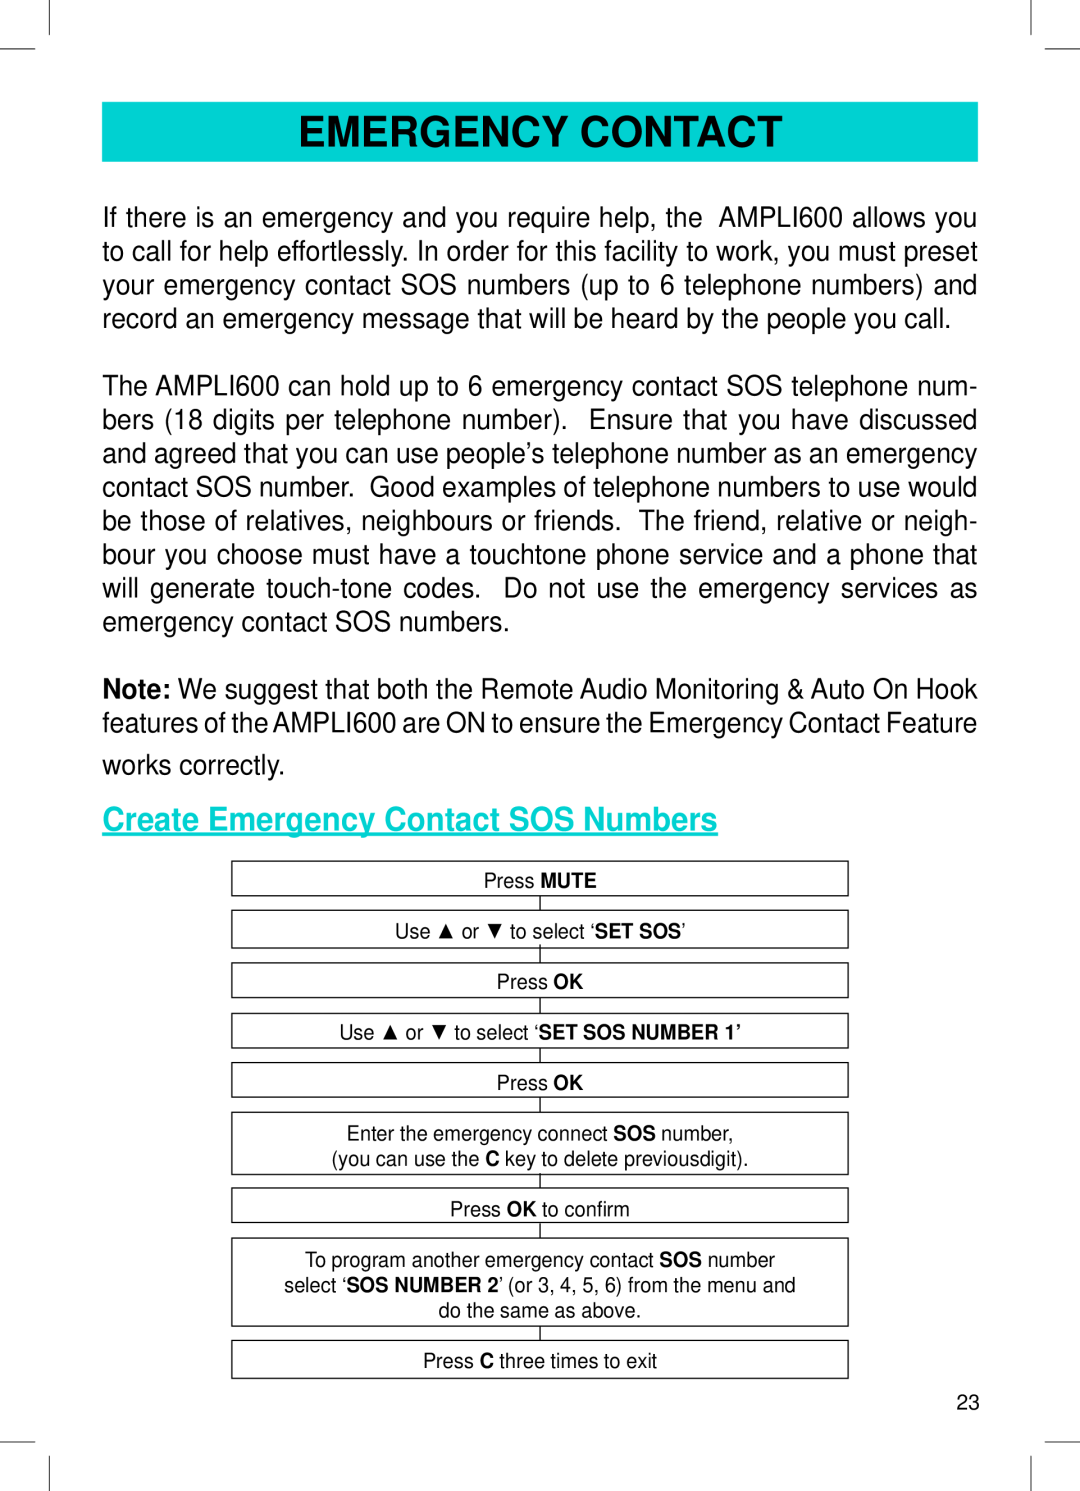 Geemarc AMPLI600 manual Create Emergency Contact SOS Numbers 